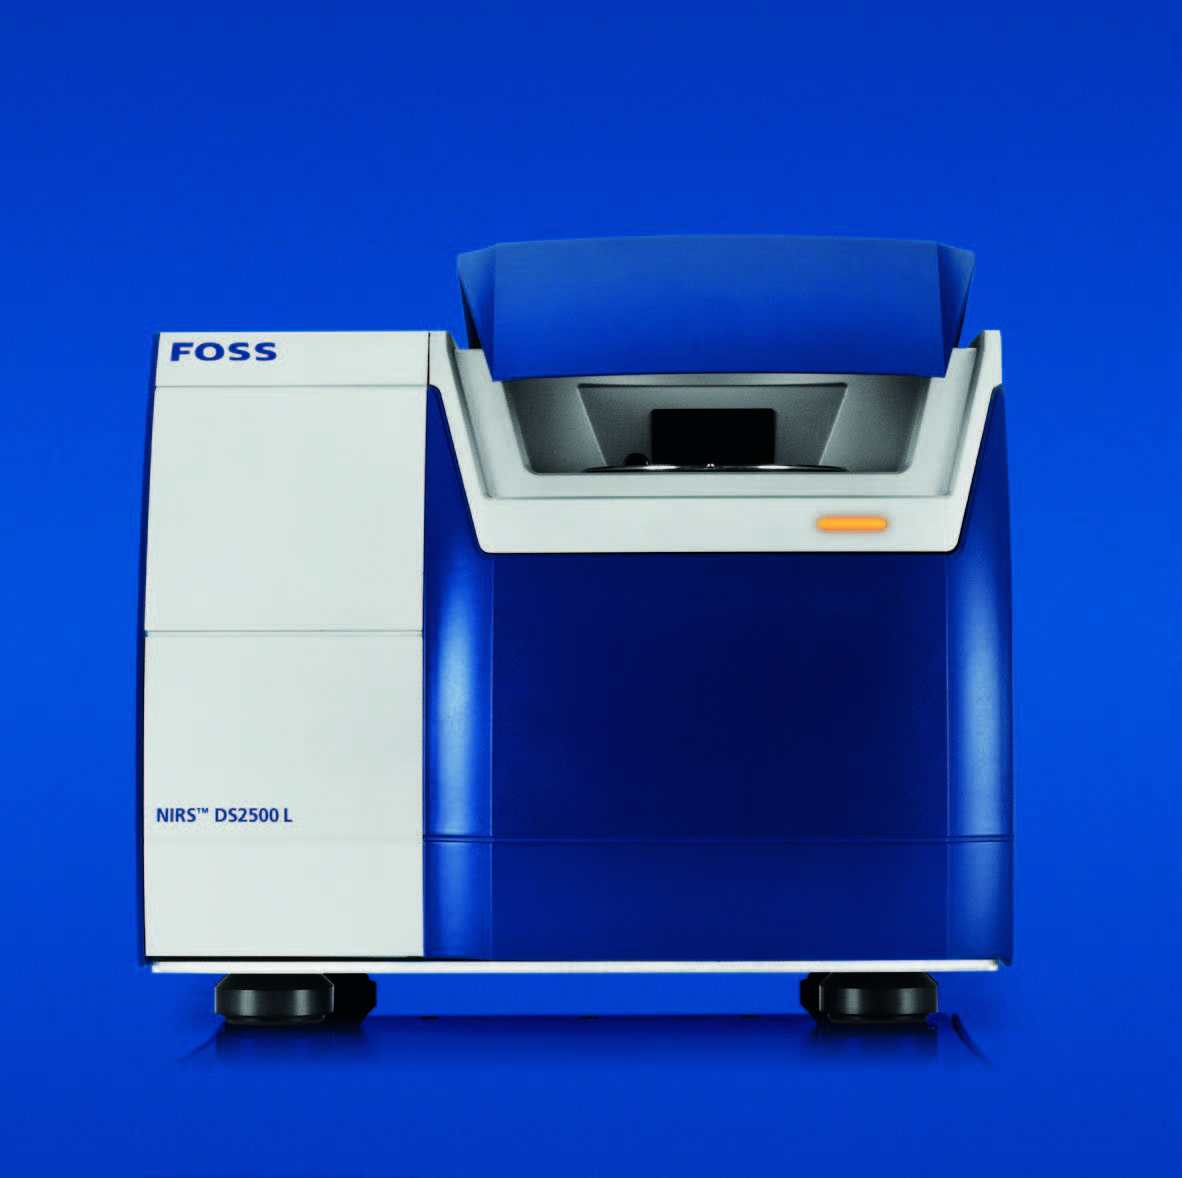 福斯近红外油脂品质分析仪 NIRS™ DS2500 L 